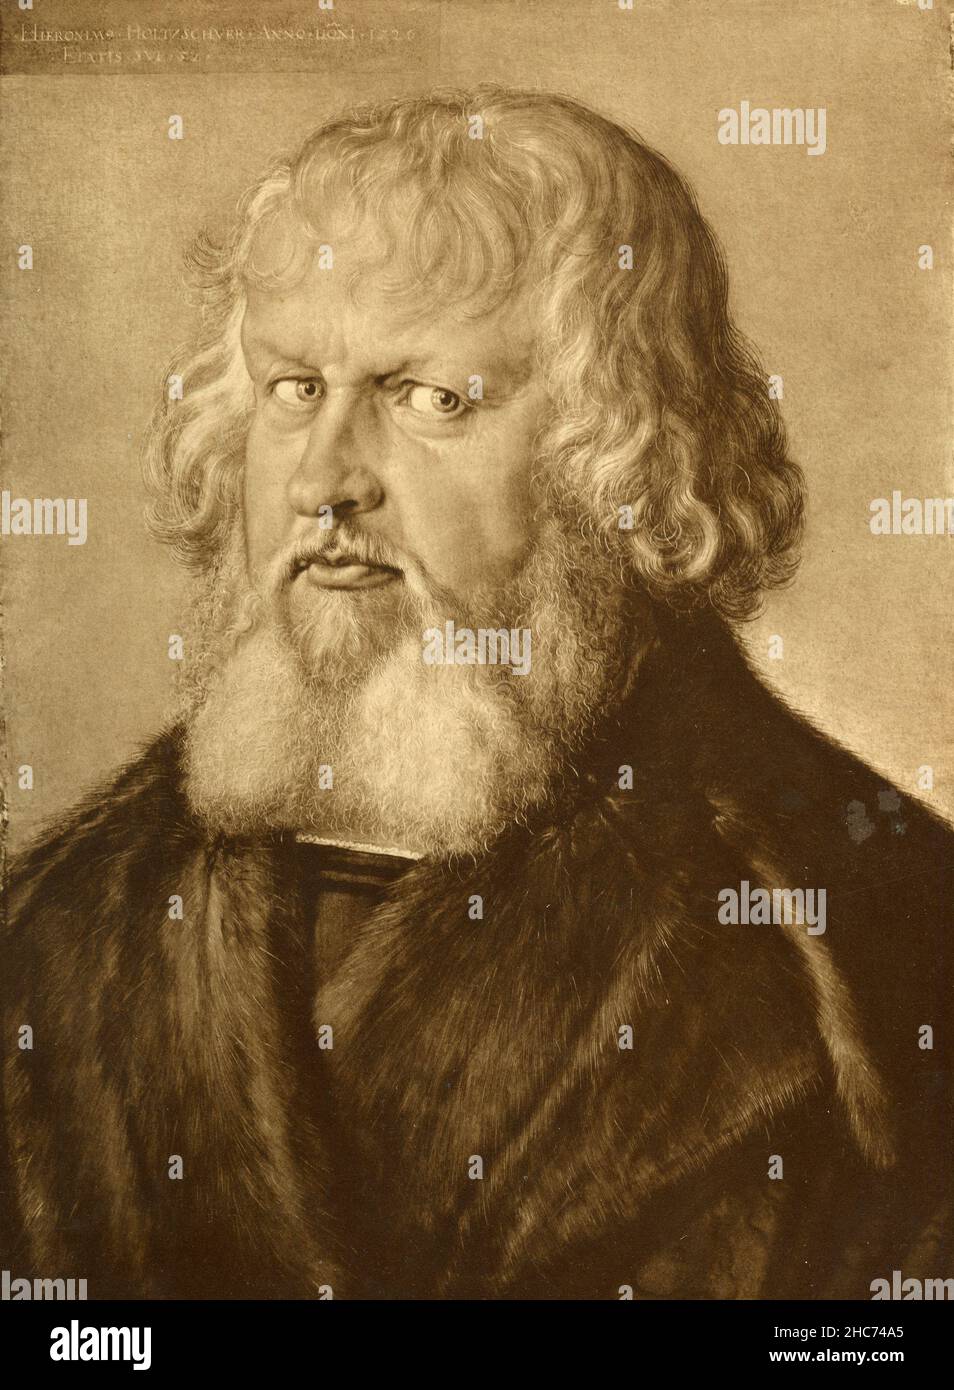 Portrait de Hieronymus Holzschuher, peinture de l'artiste allemand Albrecht Durer, Munich 1897 Banque D'Images